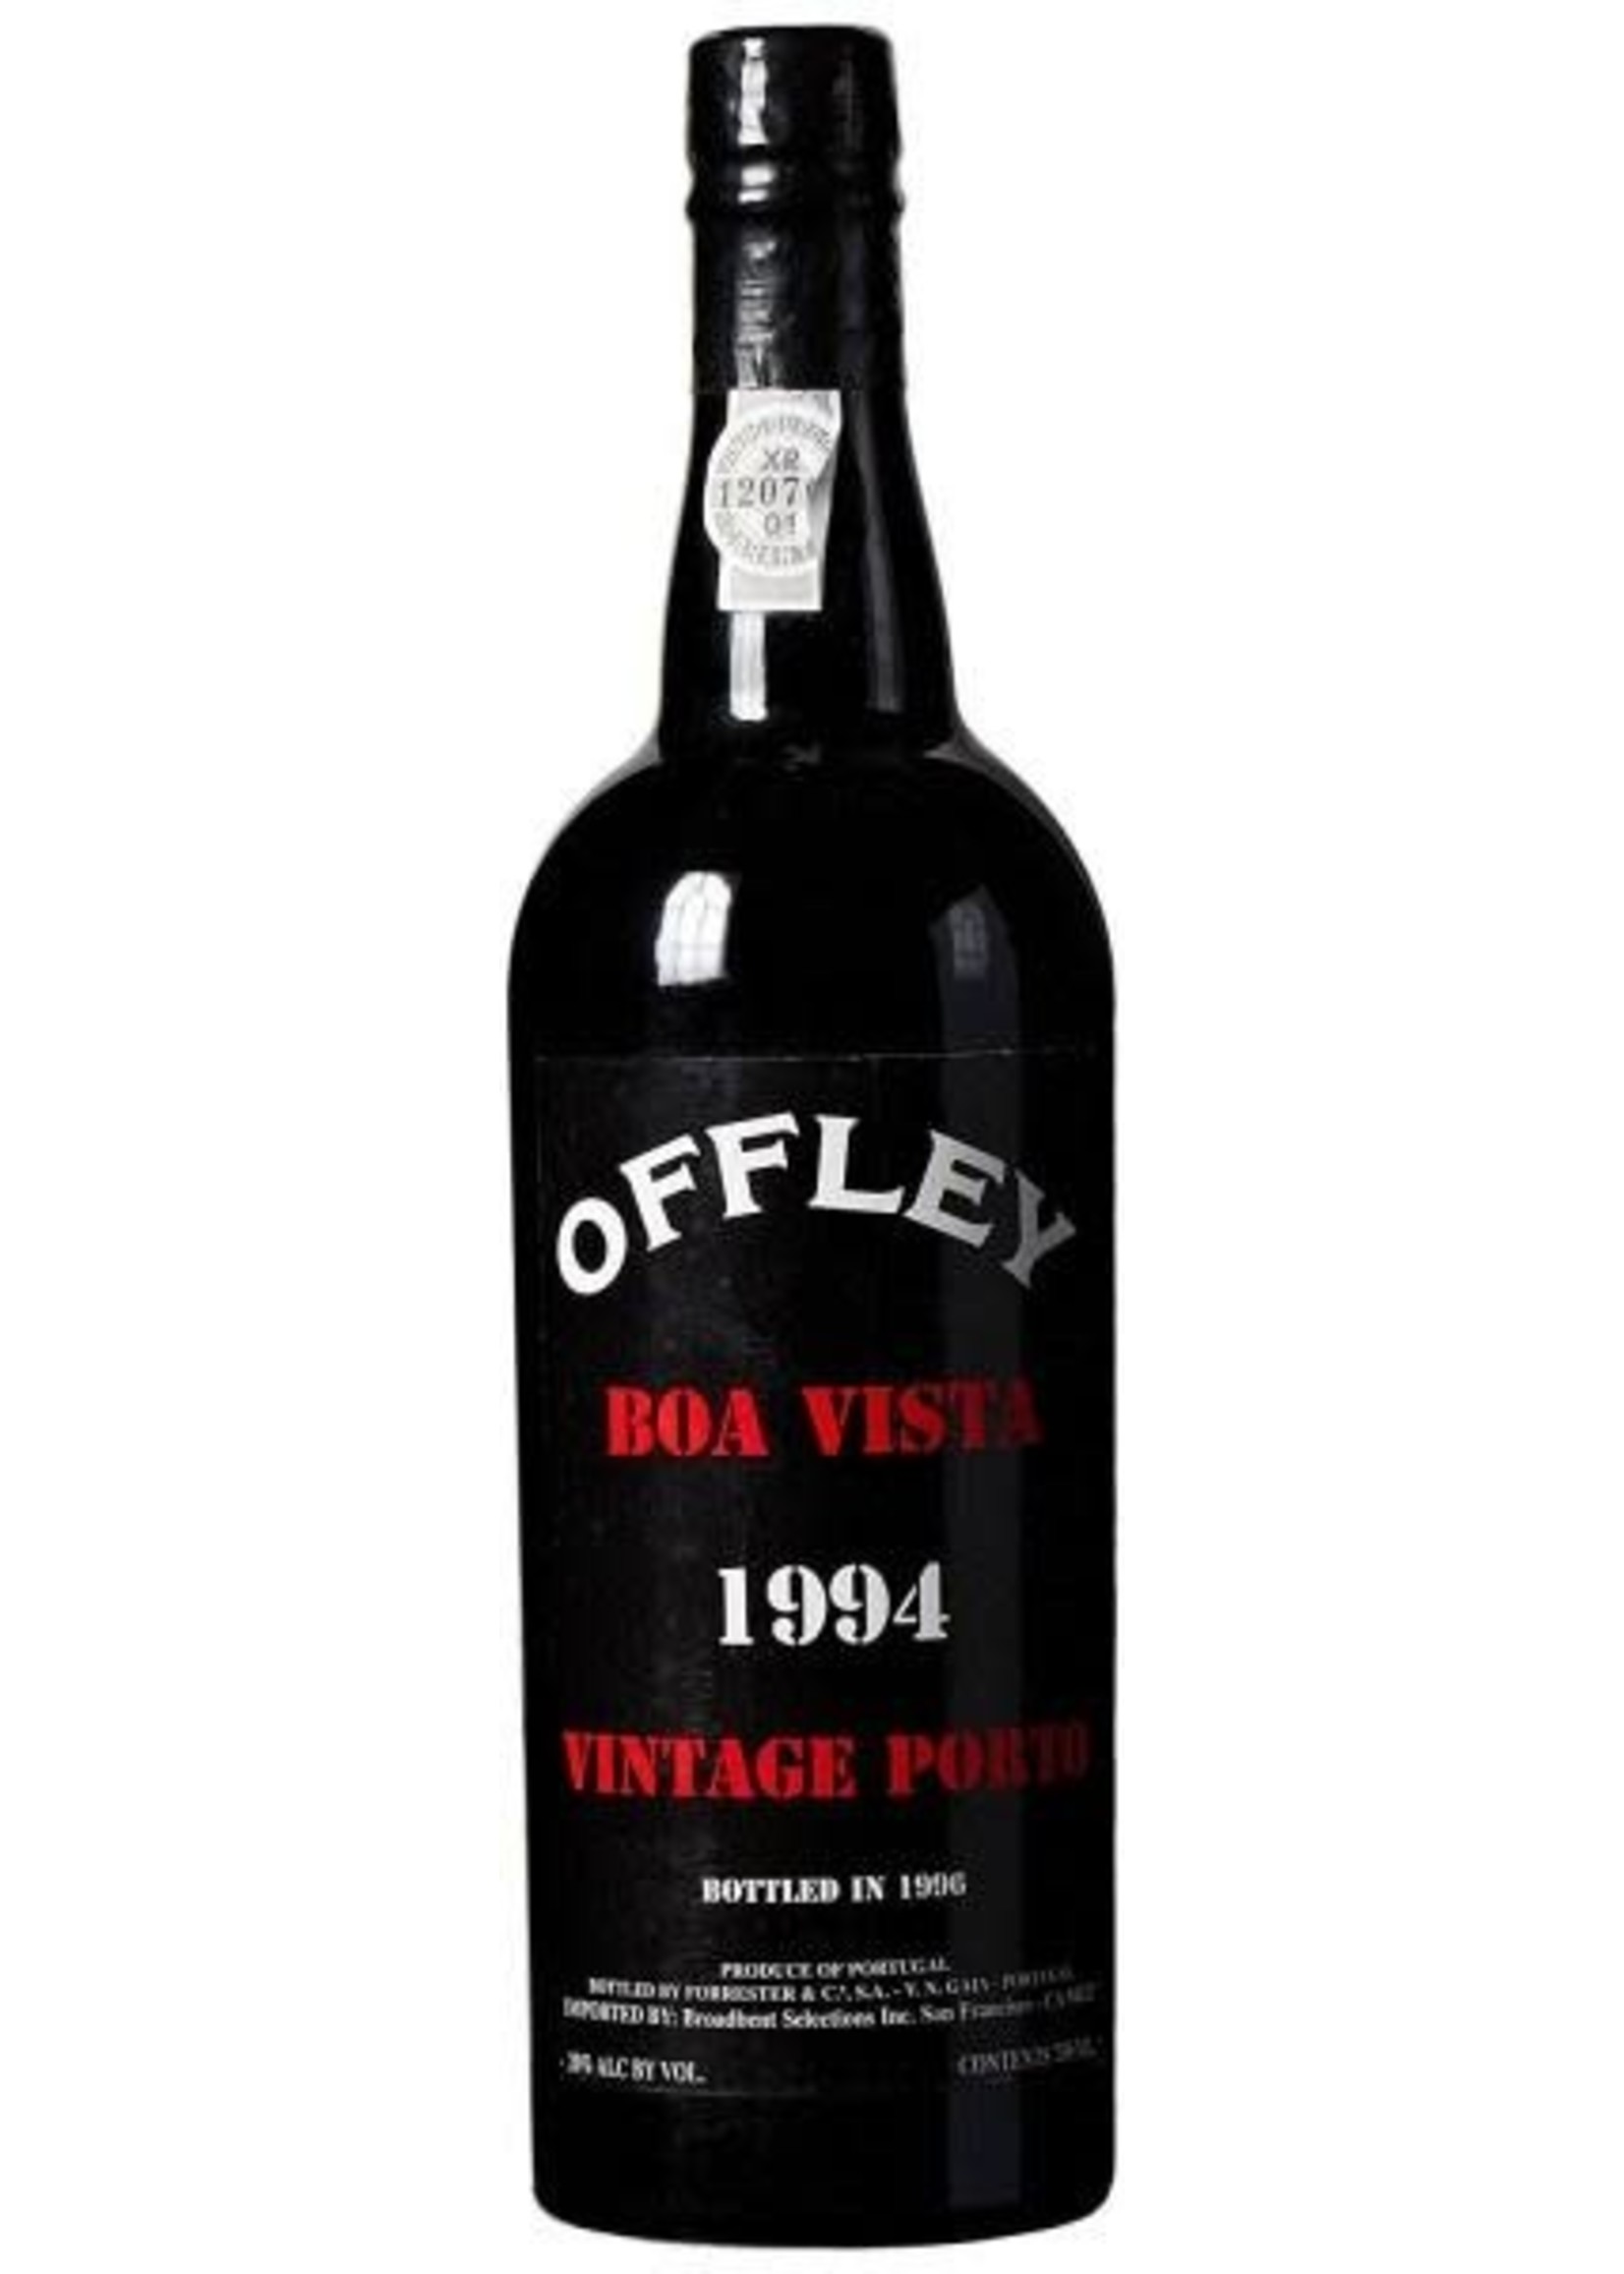 Offley Offley /Boa Vista / 1994 vintage port / 750mL